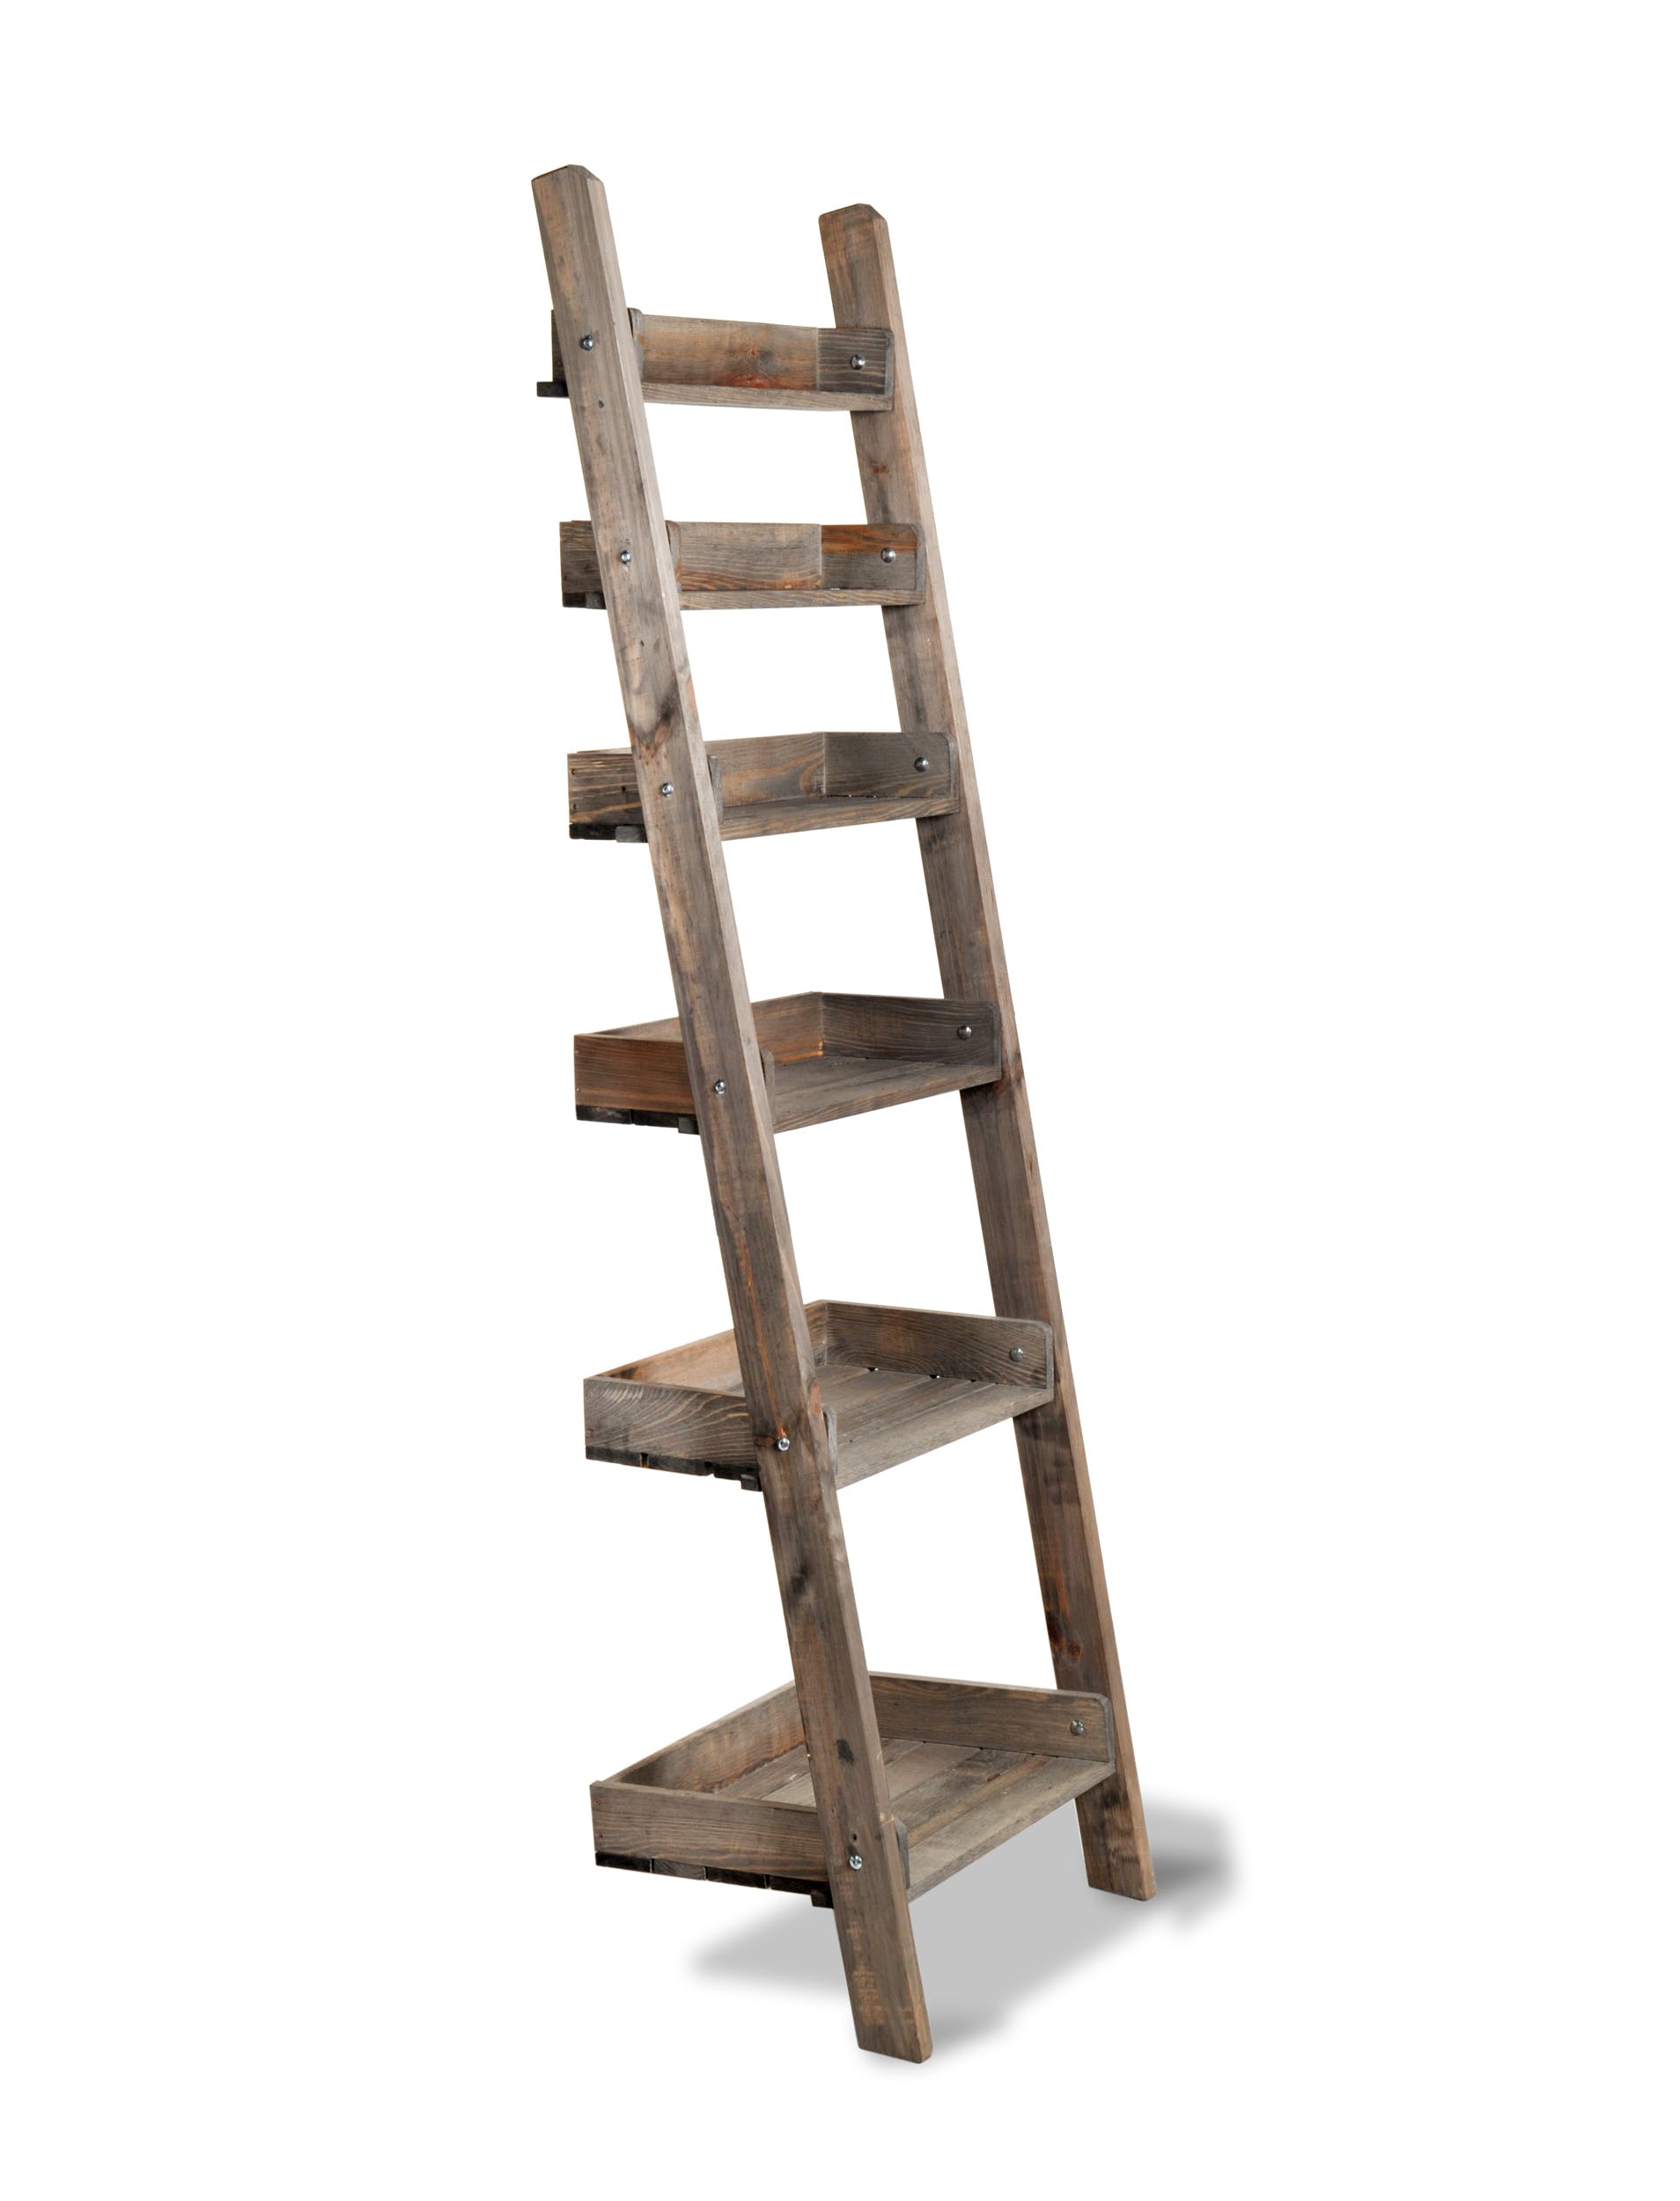 Aldworth Rustic Spruce Wooden Ladder Shelves Lisa Valentine Home